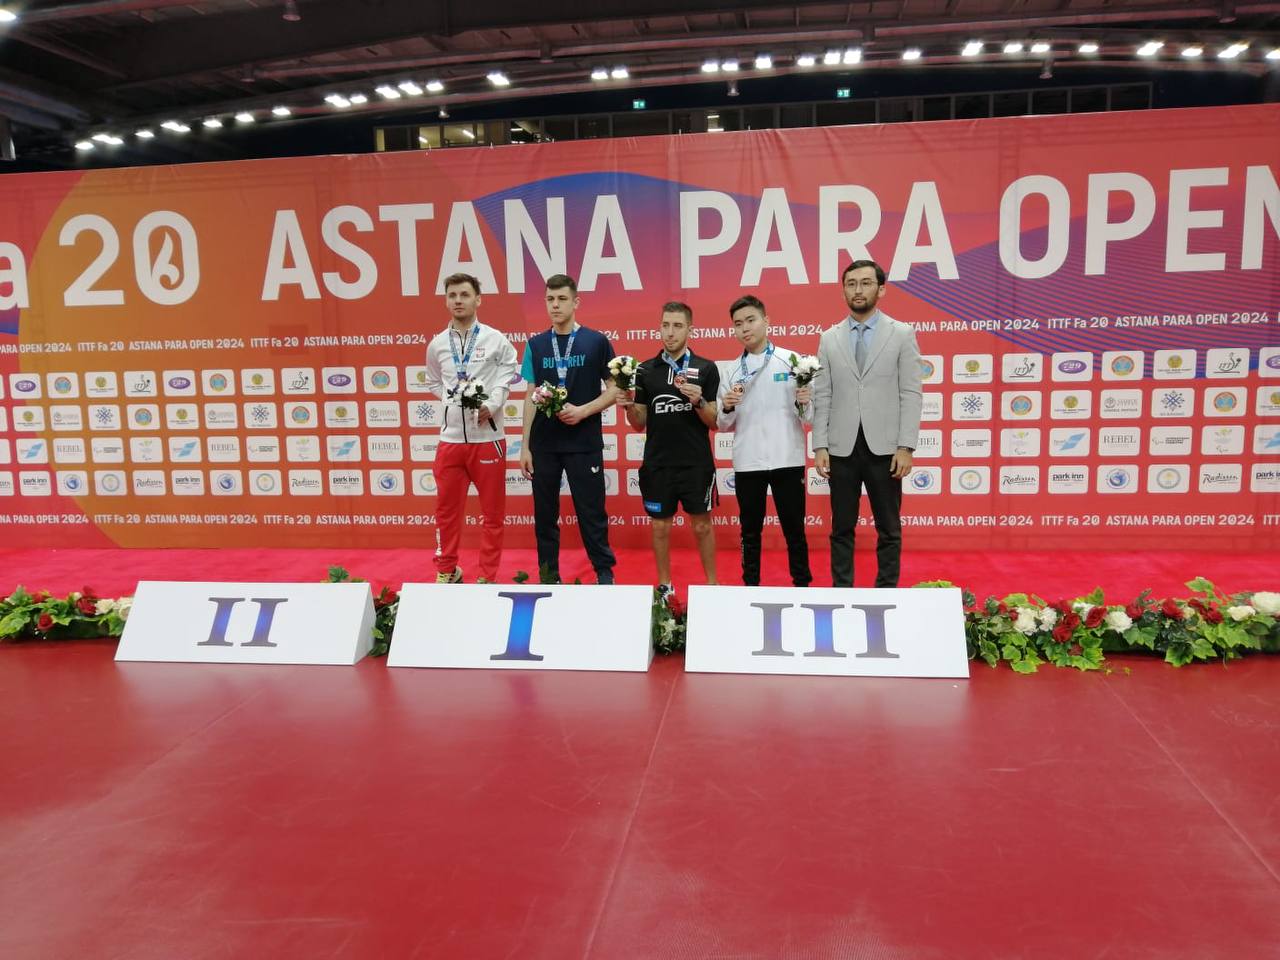 Саратовские параспортсмены завоевали награды международных соревнований по настольному теннису